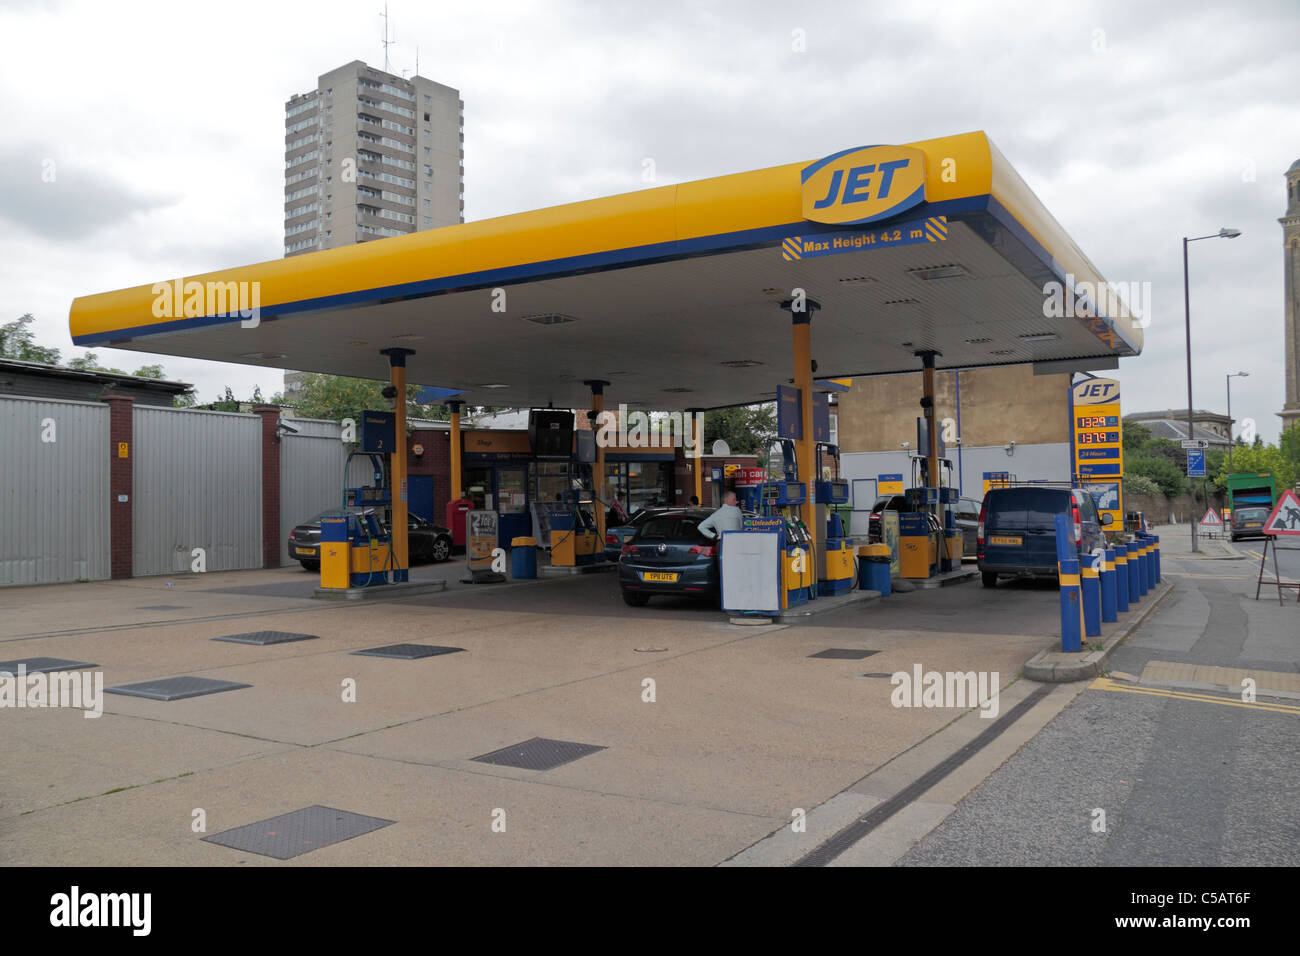 La gasolinera Jet explanada en Brentford, Middlesex, Reino Unido. Foto de stock